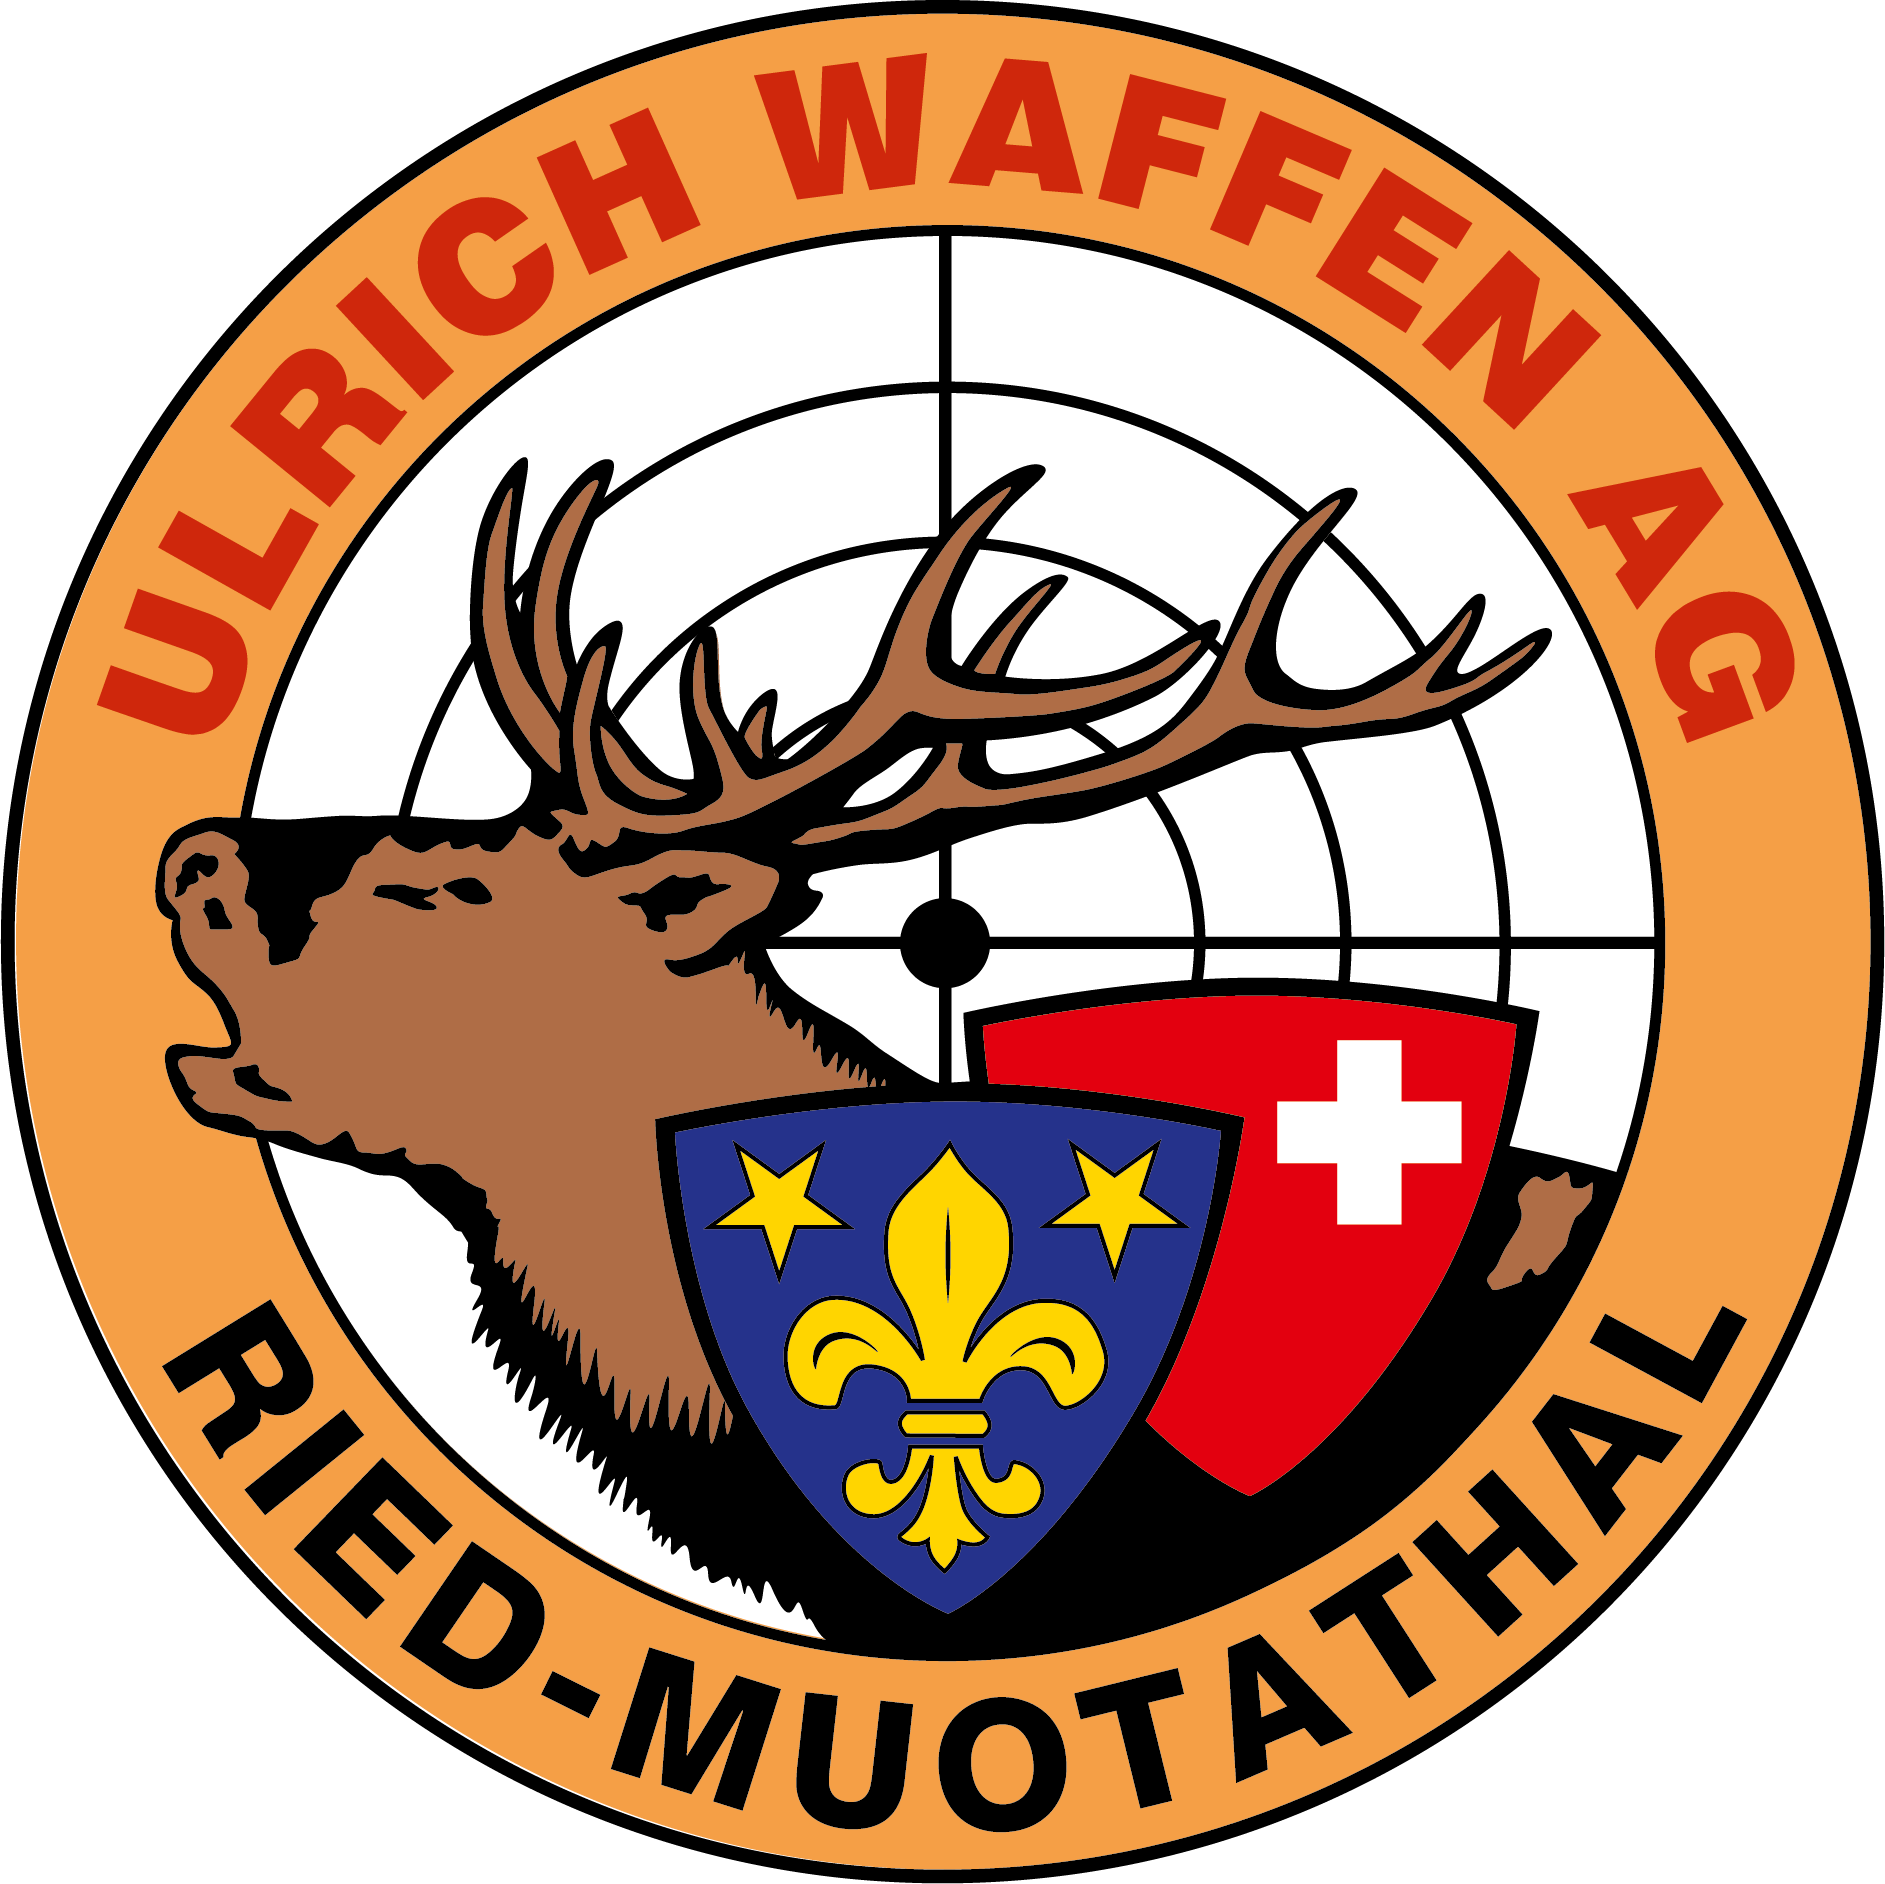 Ulrich Waffen logo